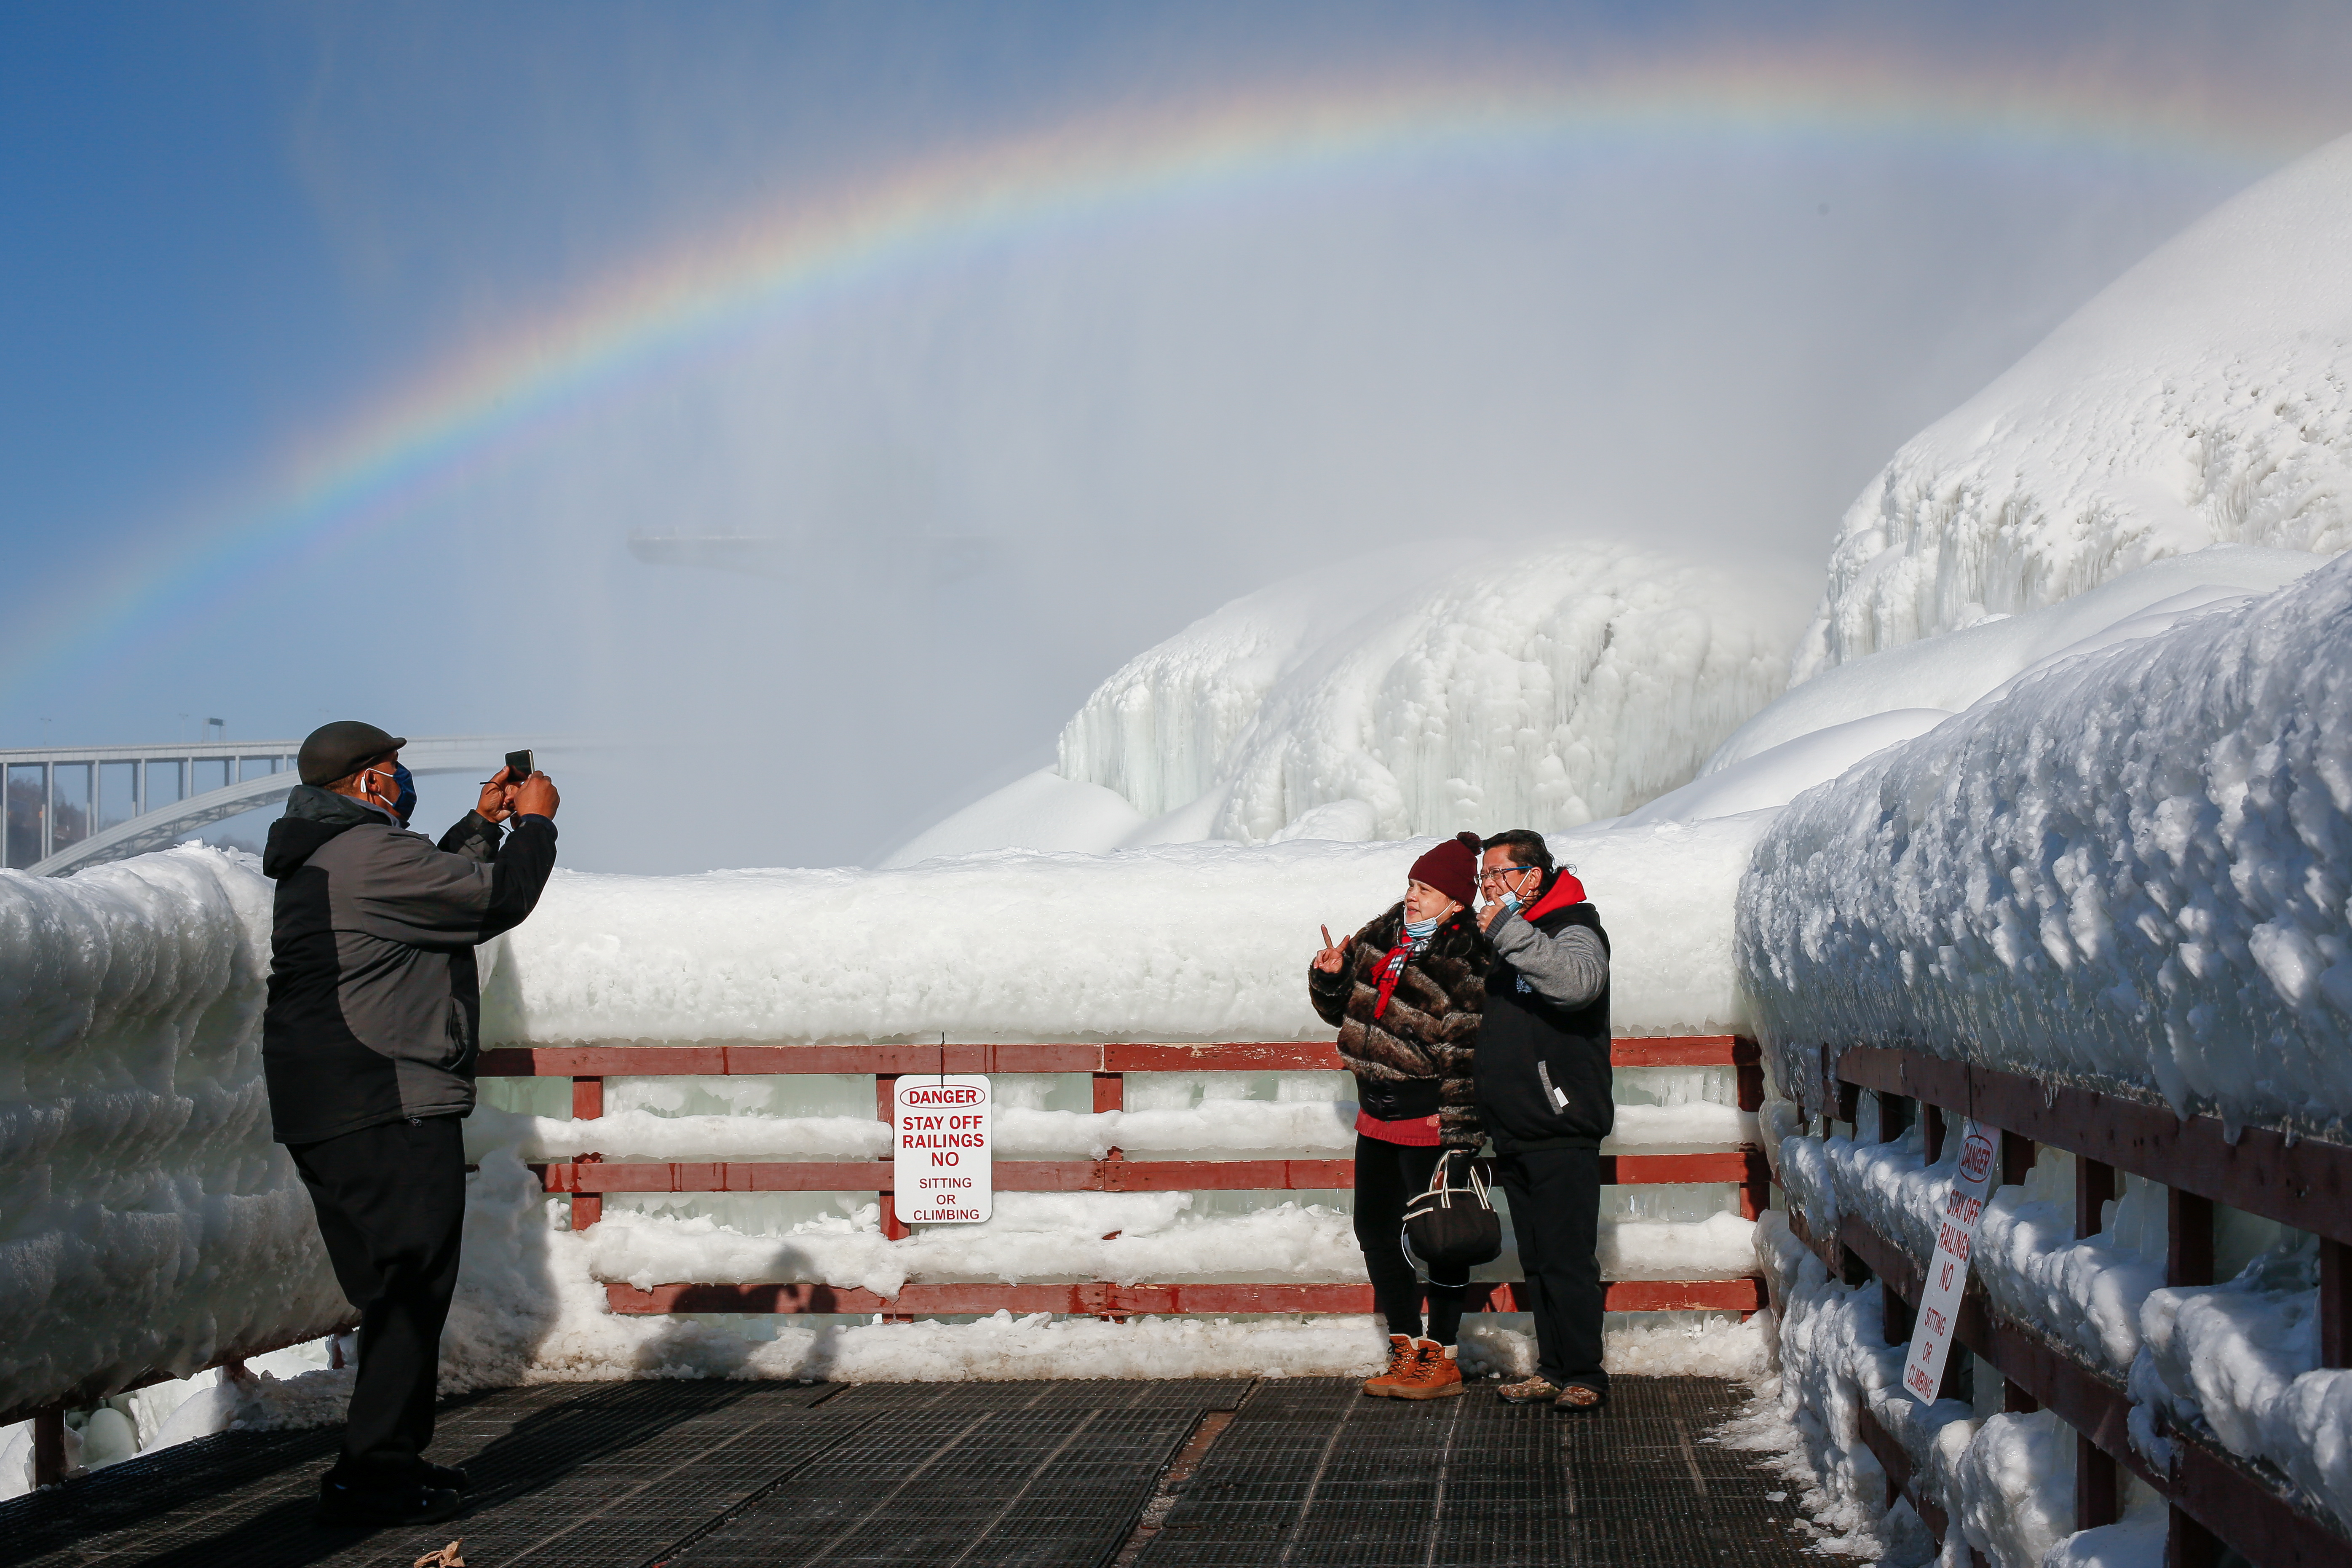 Hielo y arcoíris: Ola de frío creó espectacular paisaje en las cataratas del Niágara (VIDEOS)